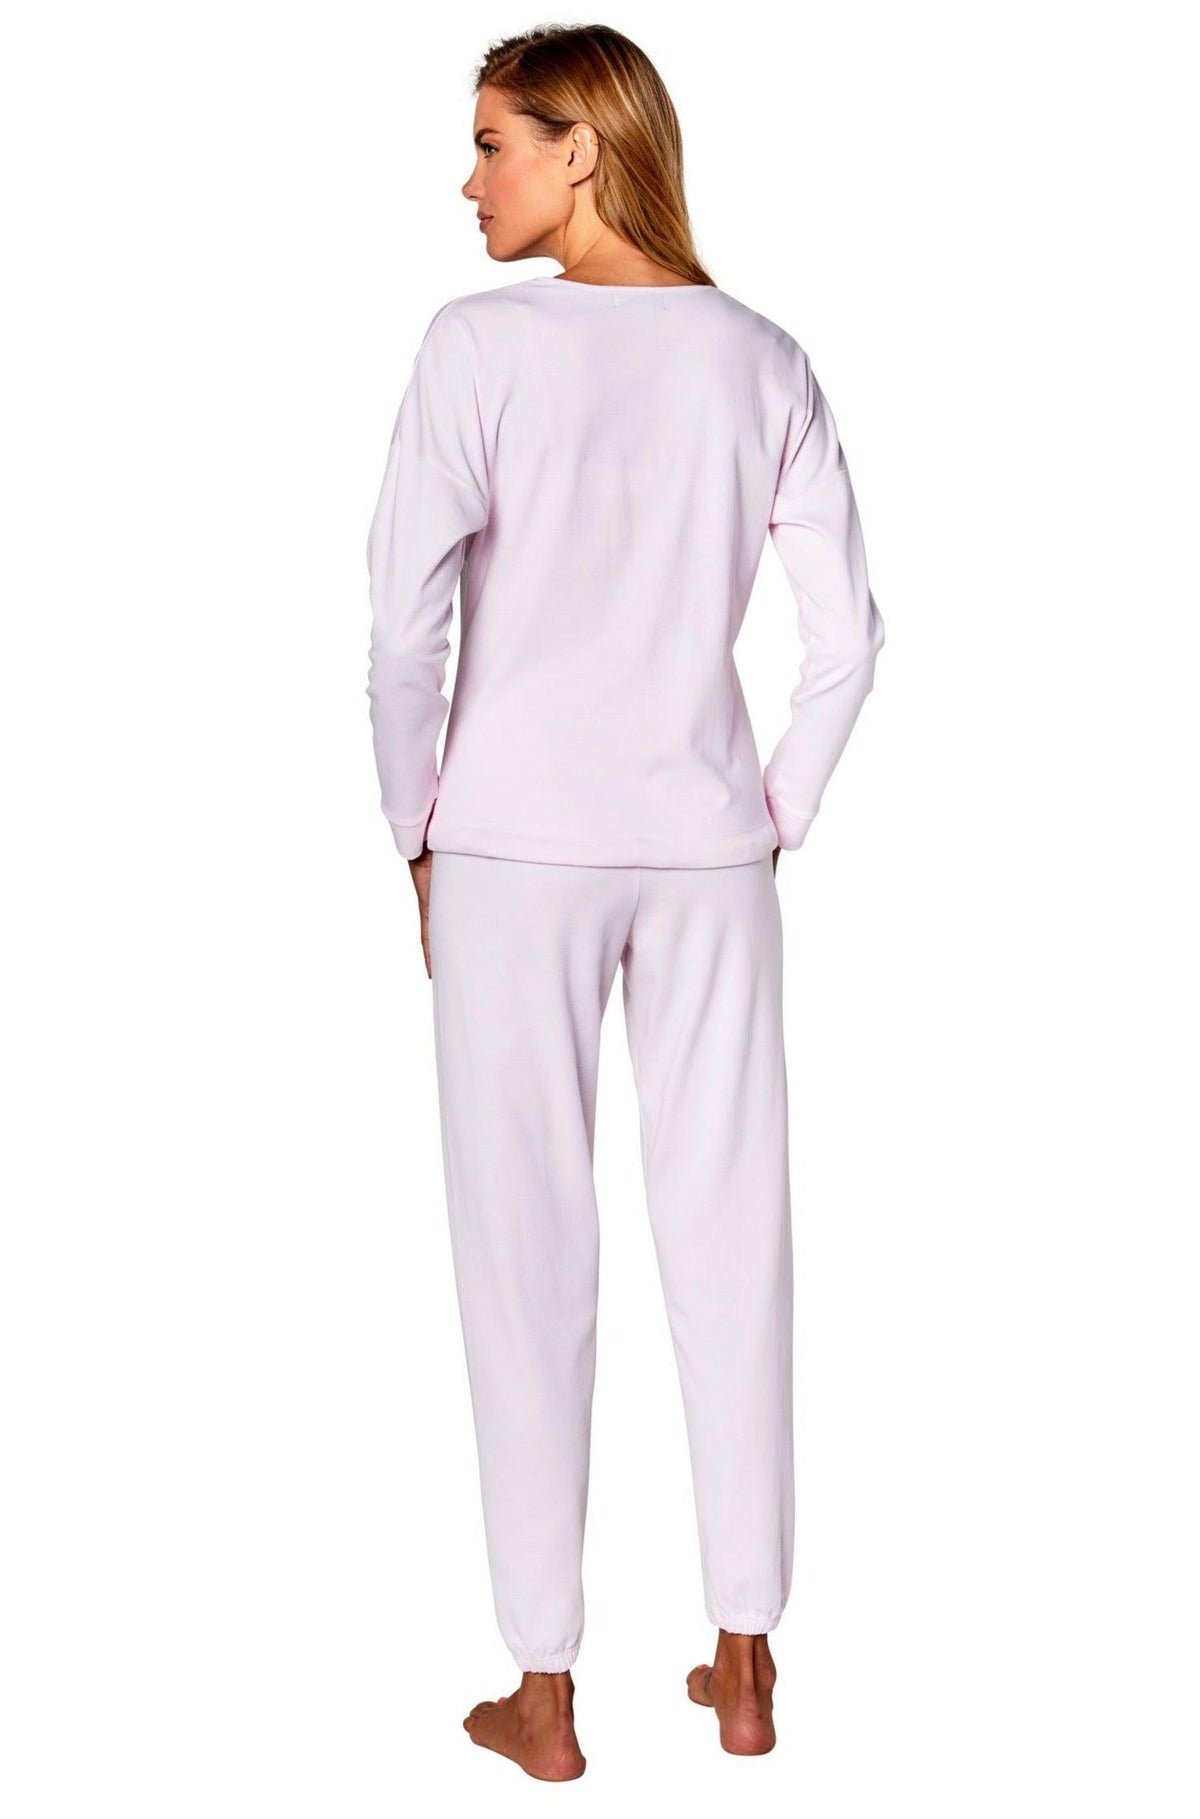 Cozy Long Sleeve PJ Set - Marelle Sleepwear